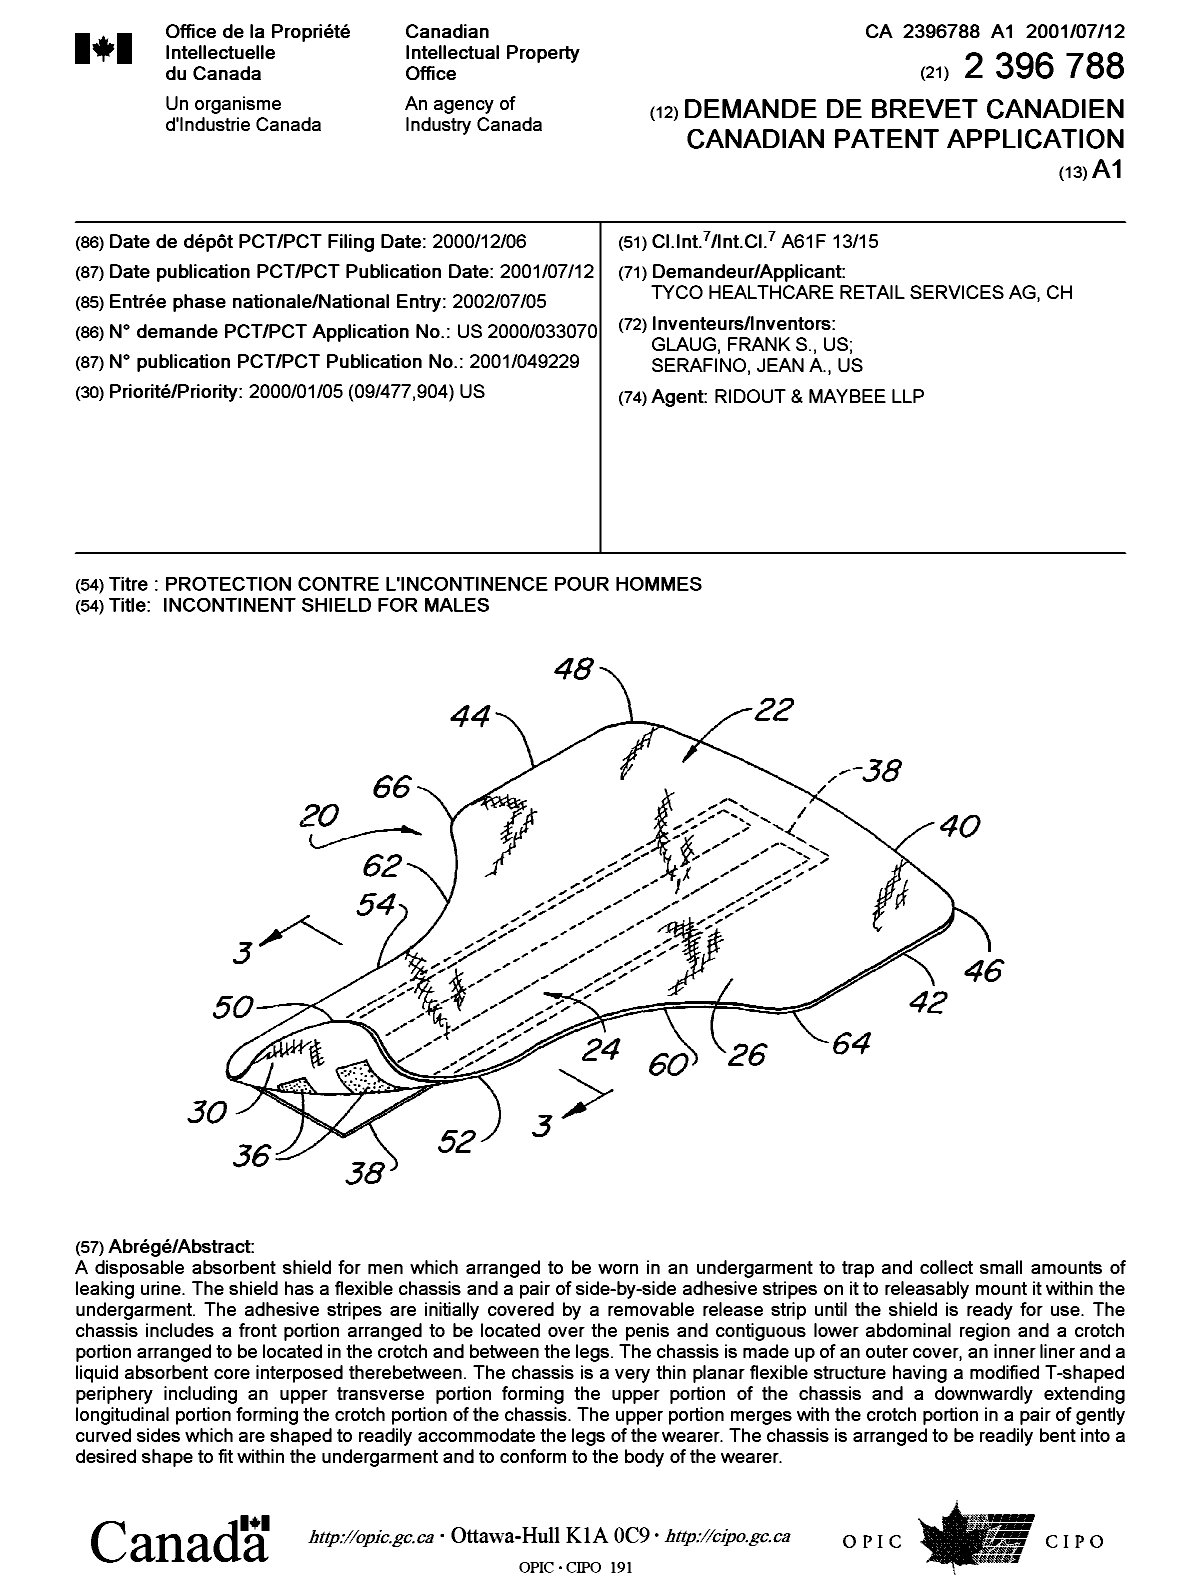 Document de brevet canadien 2396788. Page couverture 20011202. Image 1 de 1